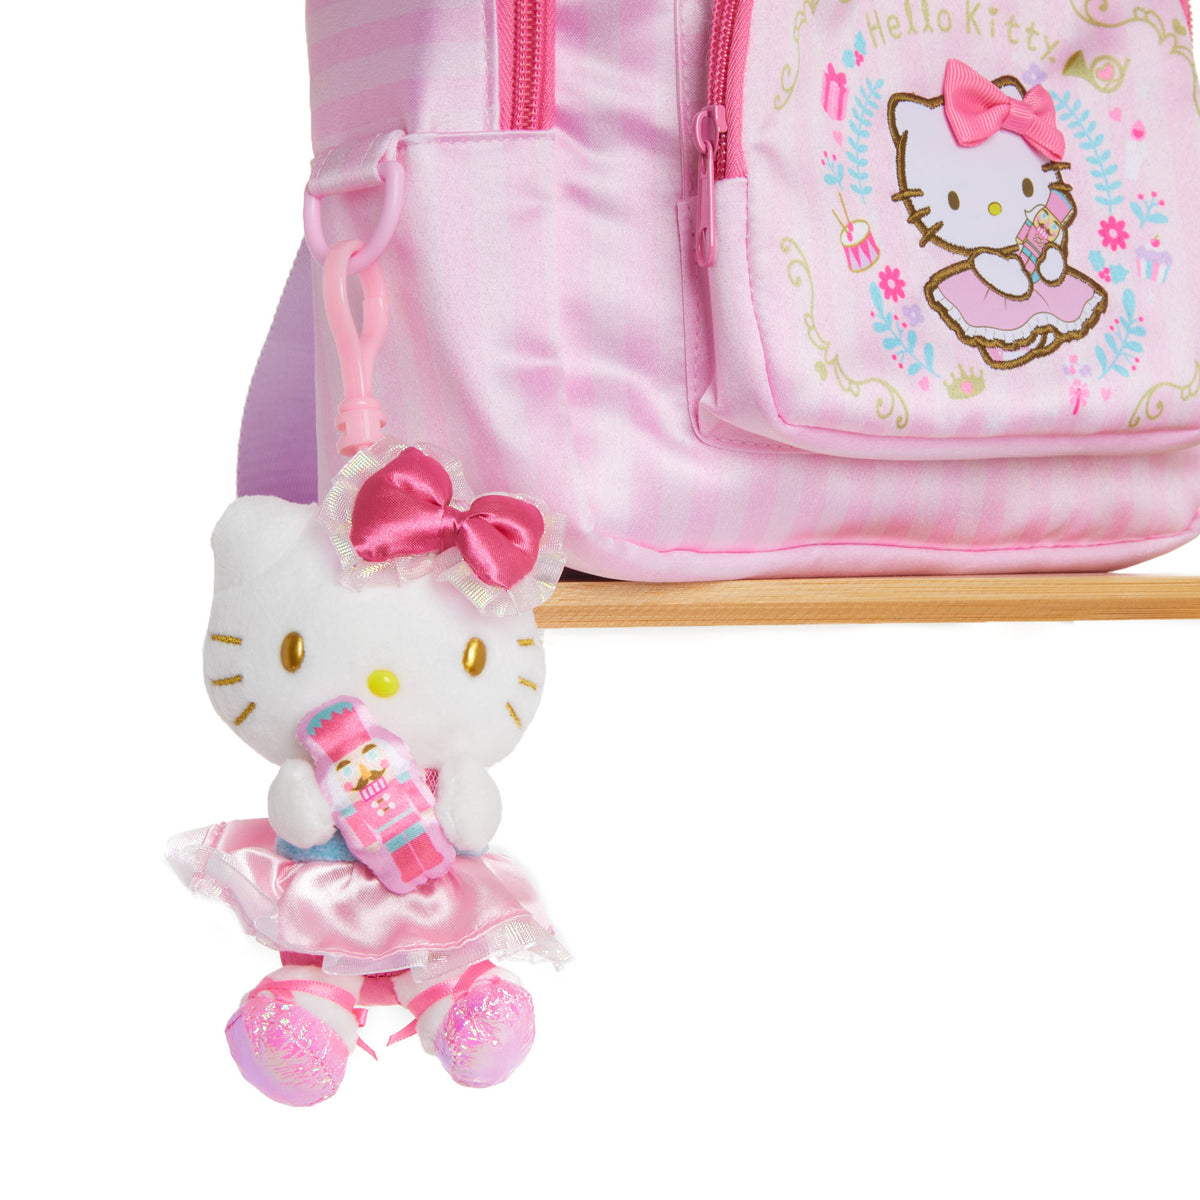 Hello Kitty Plush Mascot (Holiday Nutcracker Series) Plush NAKAJIMA CORPORATION   